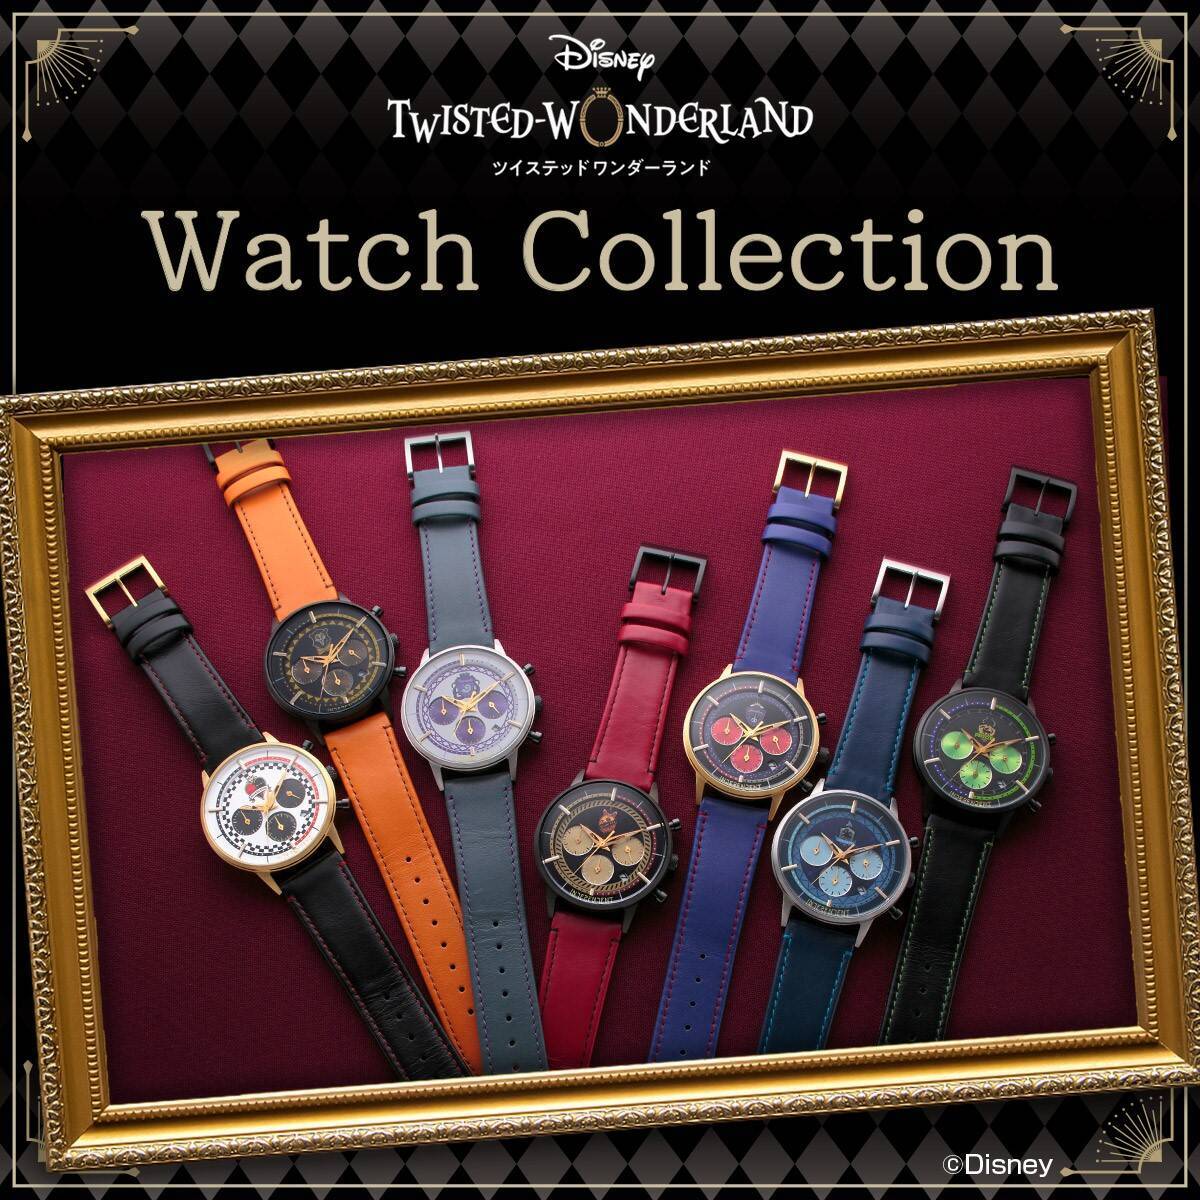 ツイステ 各寮イメージの腕時計が登場 カラーやモチーフにこだわった個性豊かなデザイン 年9月18日 エキサイトニュース